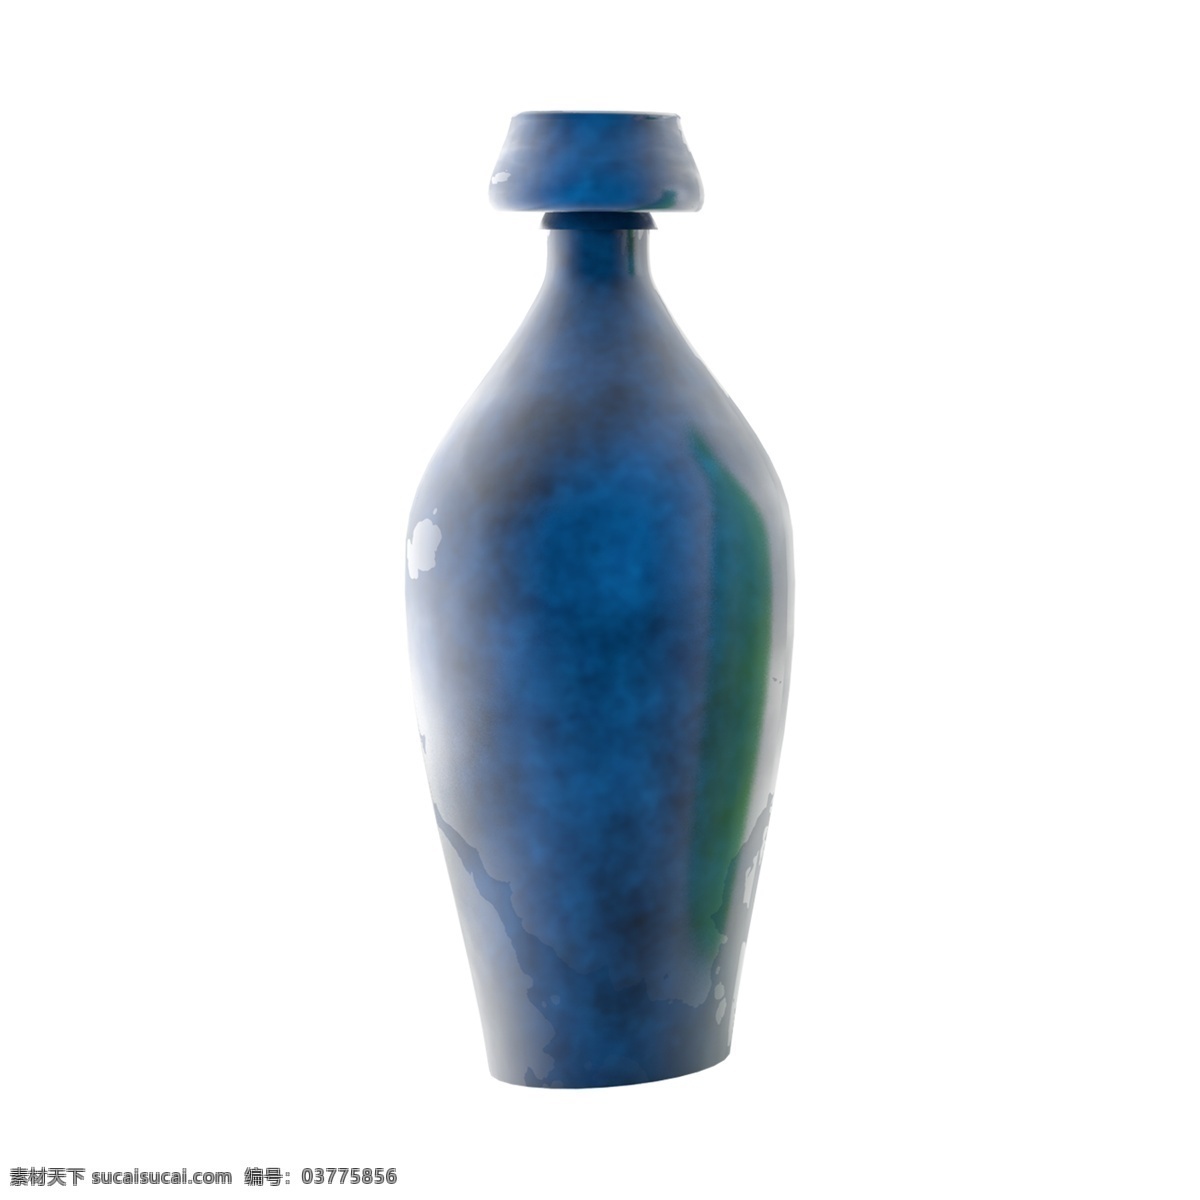 个性 花纹 艺术 装饰 瓶子 生活用品 蓝色 摆件 元素 个性花纹 艺术装饰 蓝色摆件 艺术花瓶